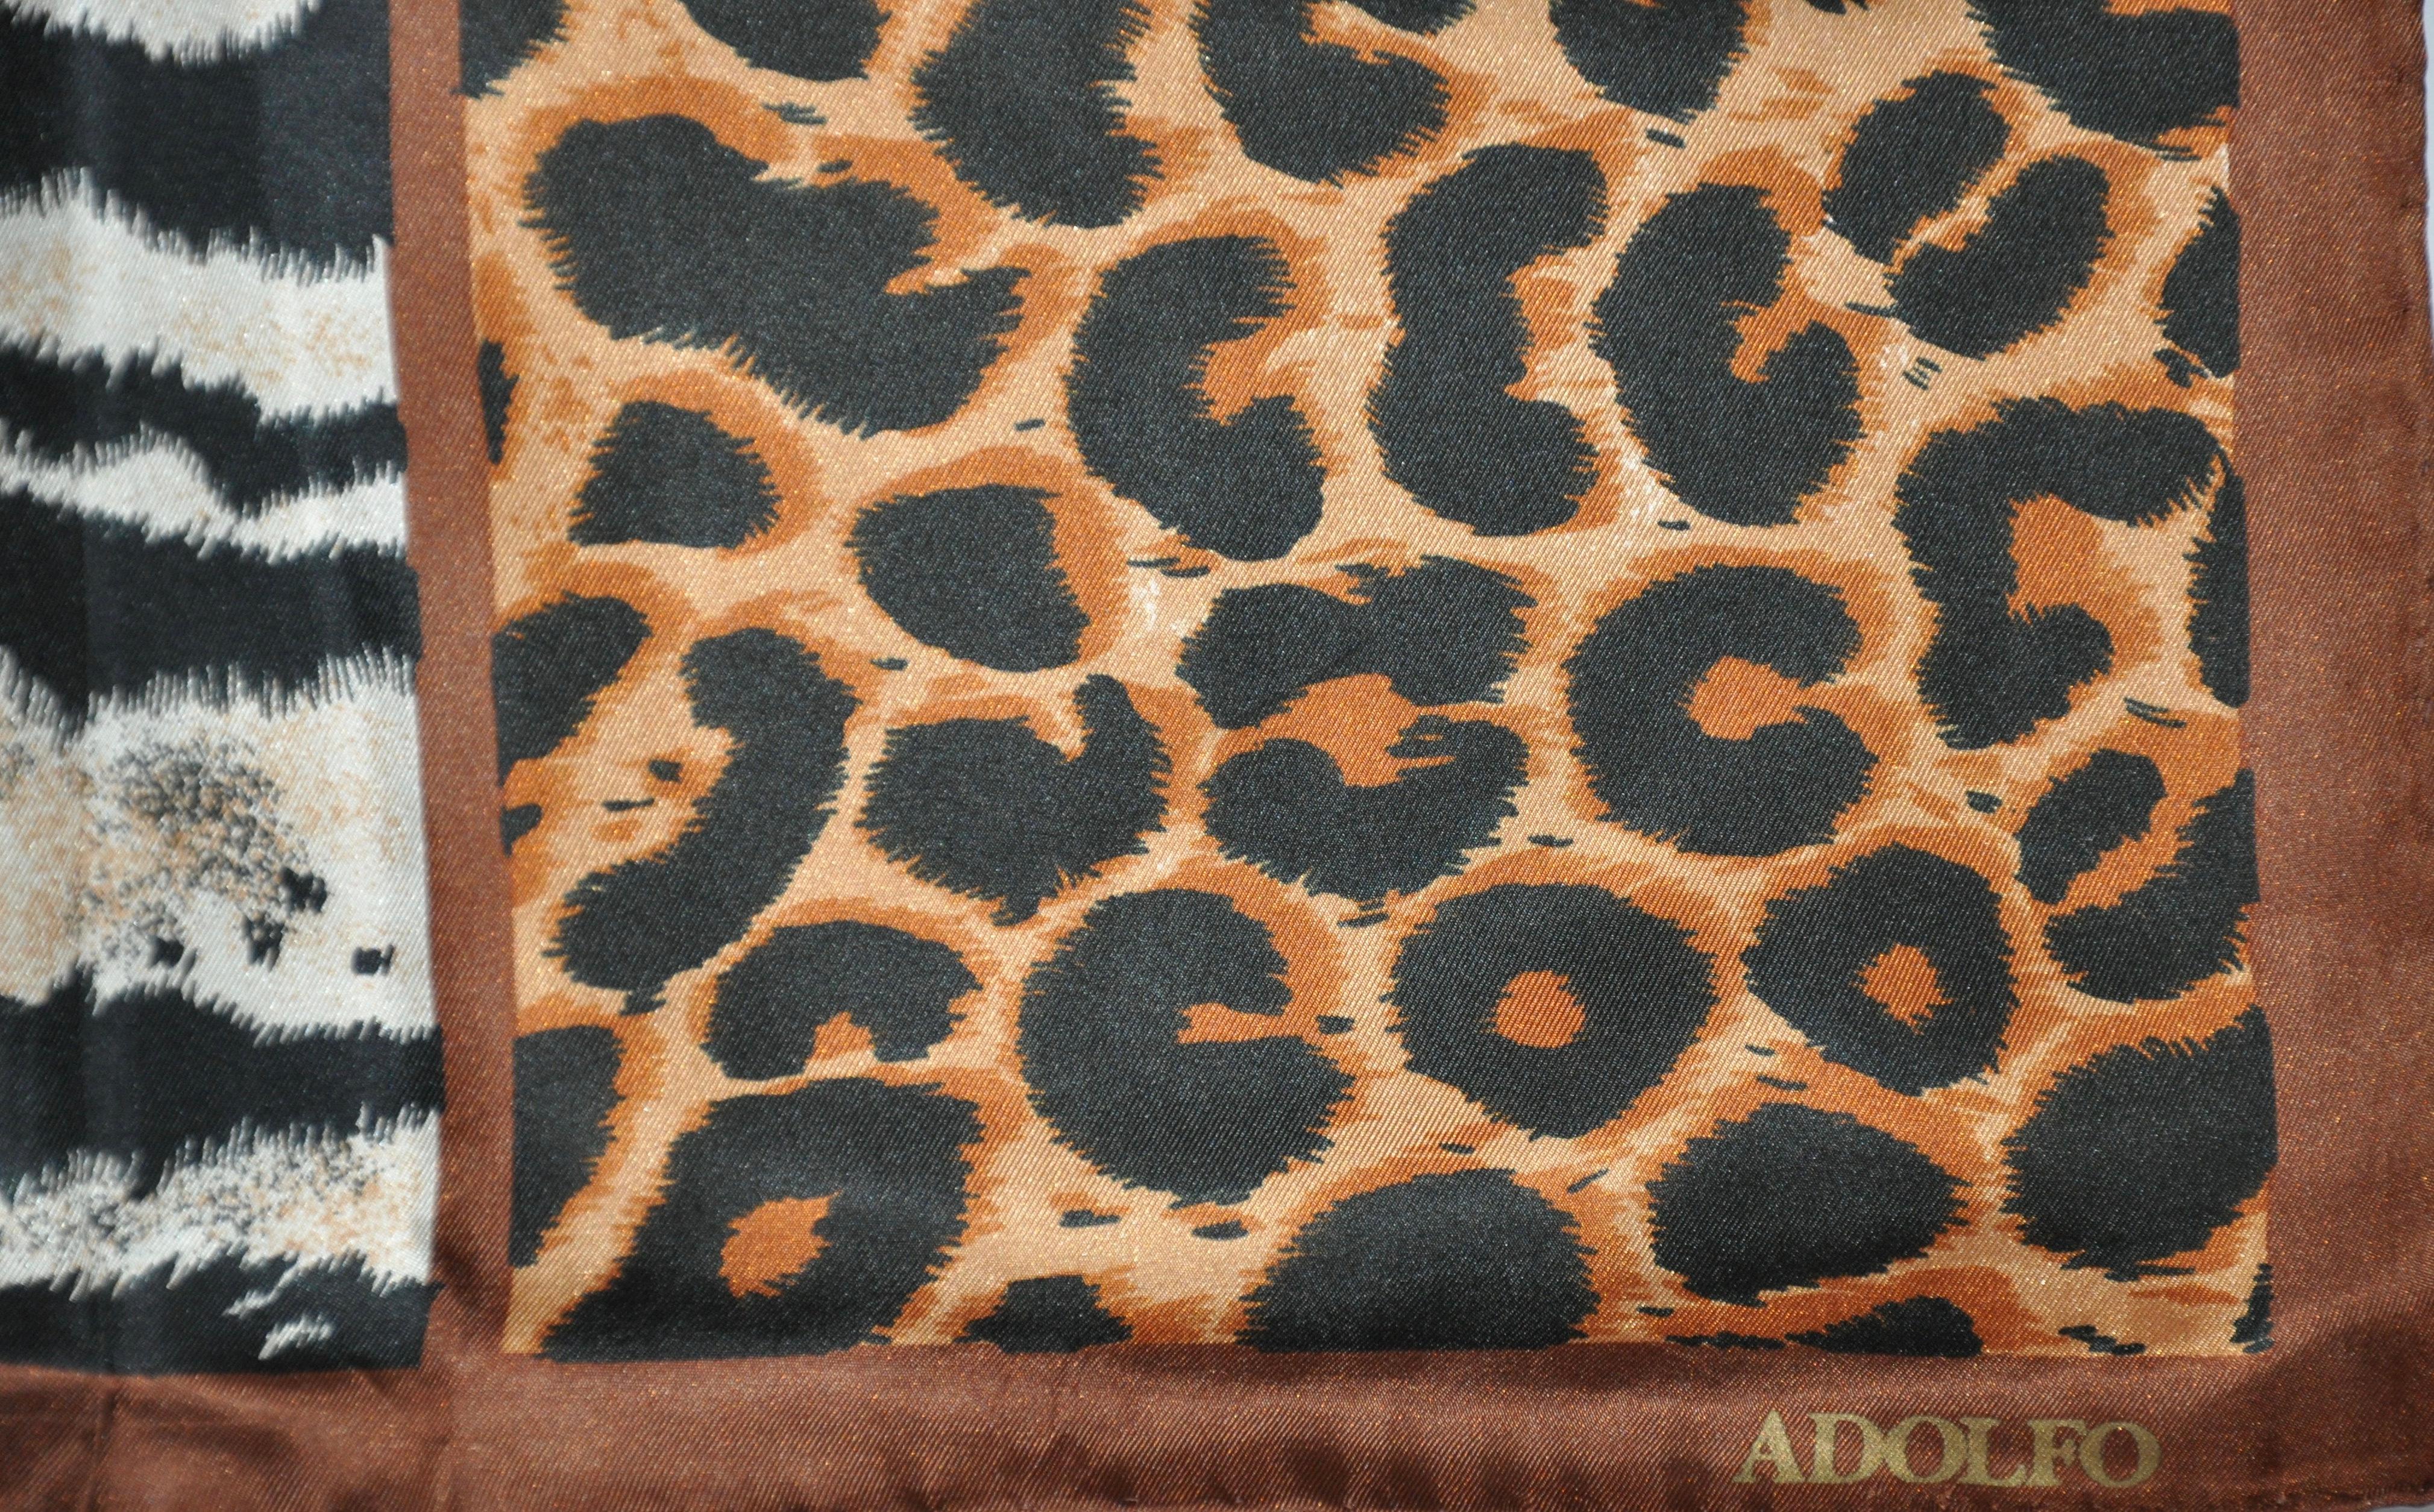 Adolfo - Grande et élégante écharpe en soie « Zebra & Leopard » Unisexe en vente